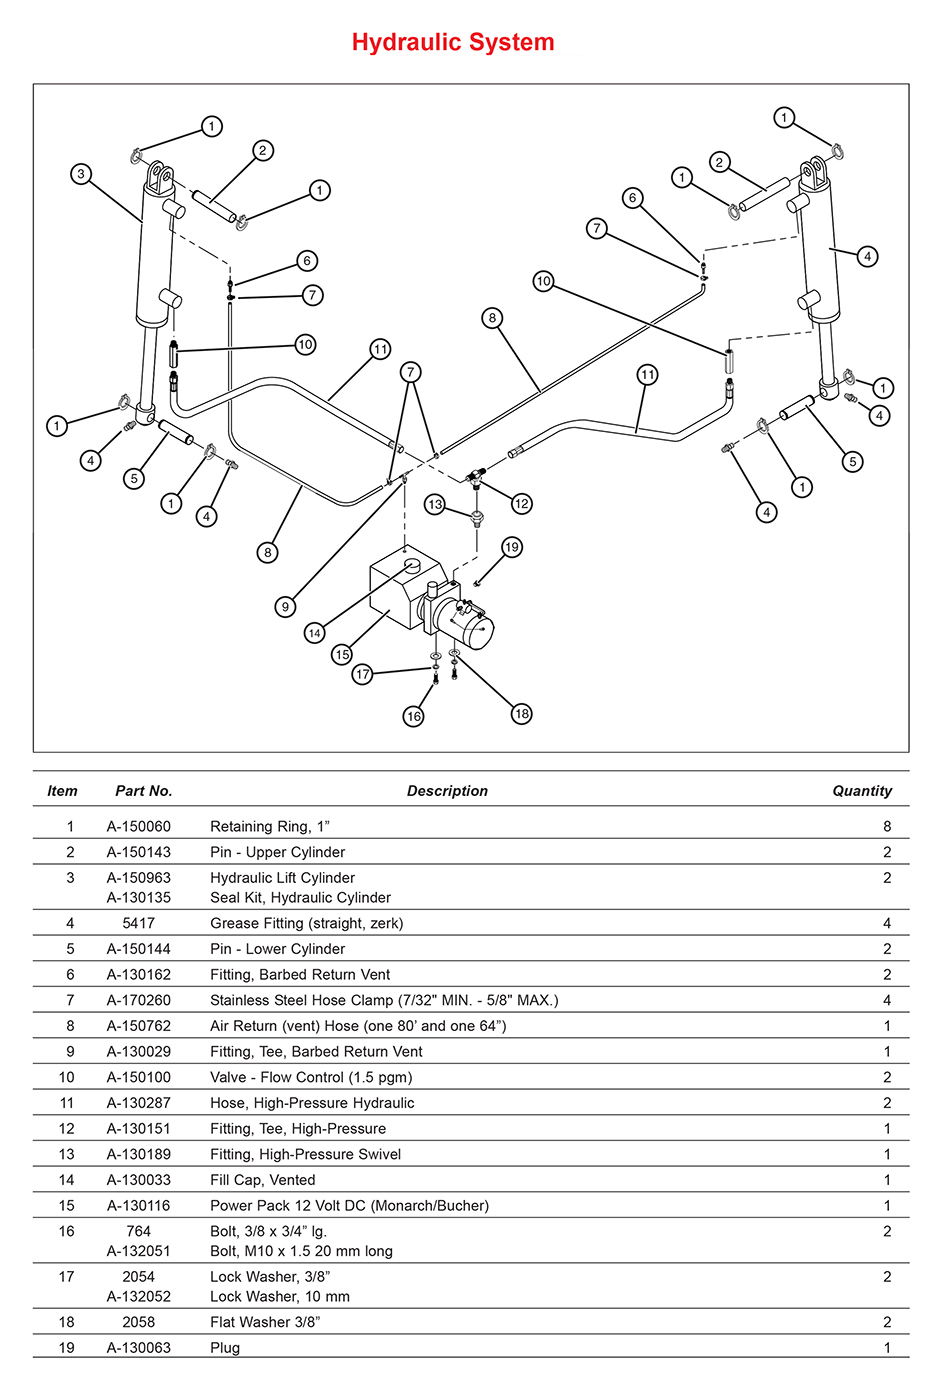 Anthony LA Hydraulic System Diagram